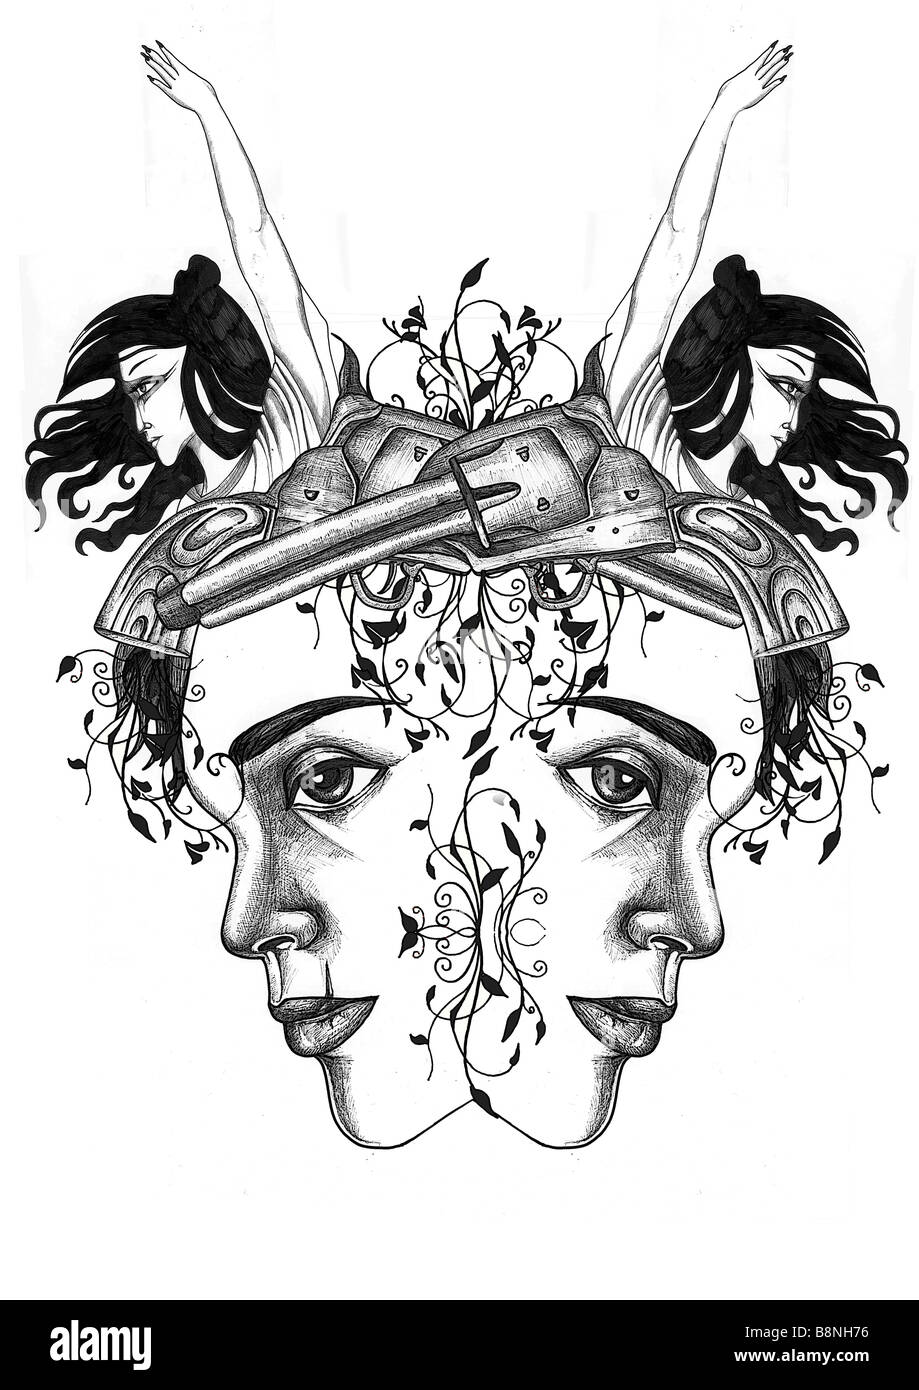 Illustration Style de tatouage d'un homme avec des intentions suicidaires (un visage, un pistolet et un arc Angel) Banque D'Images